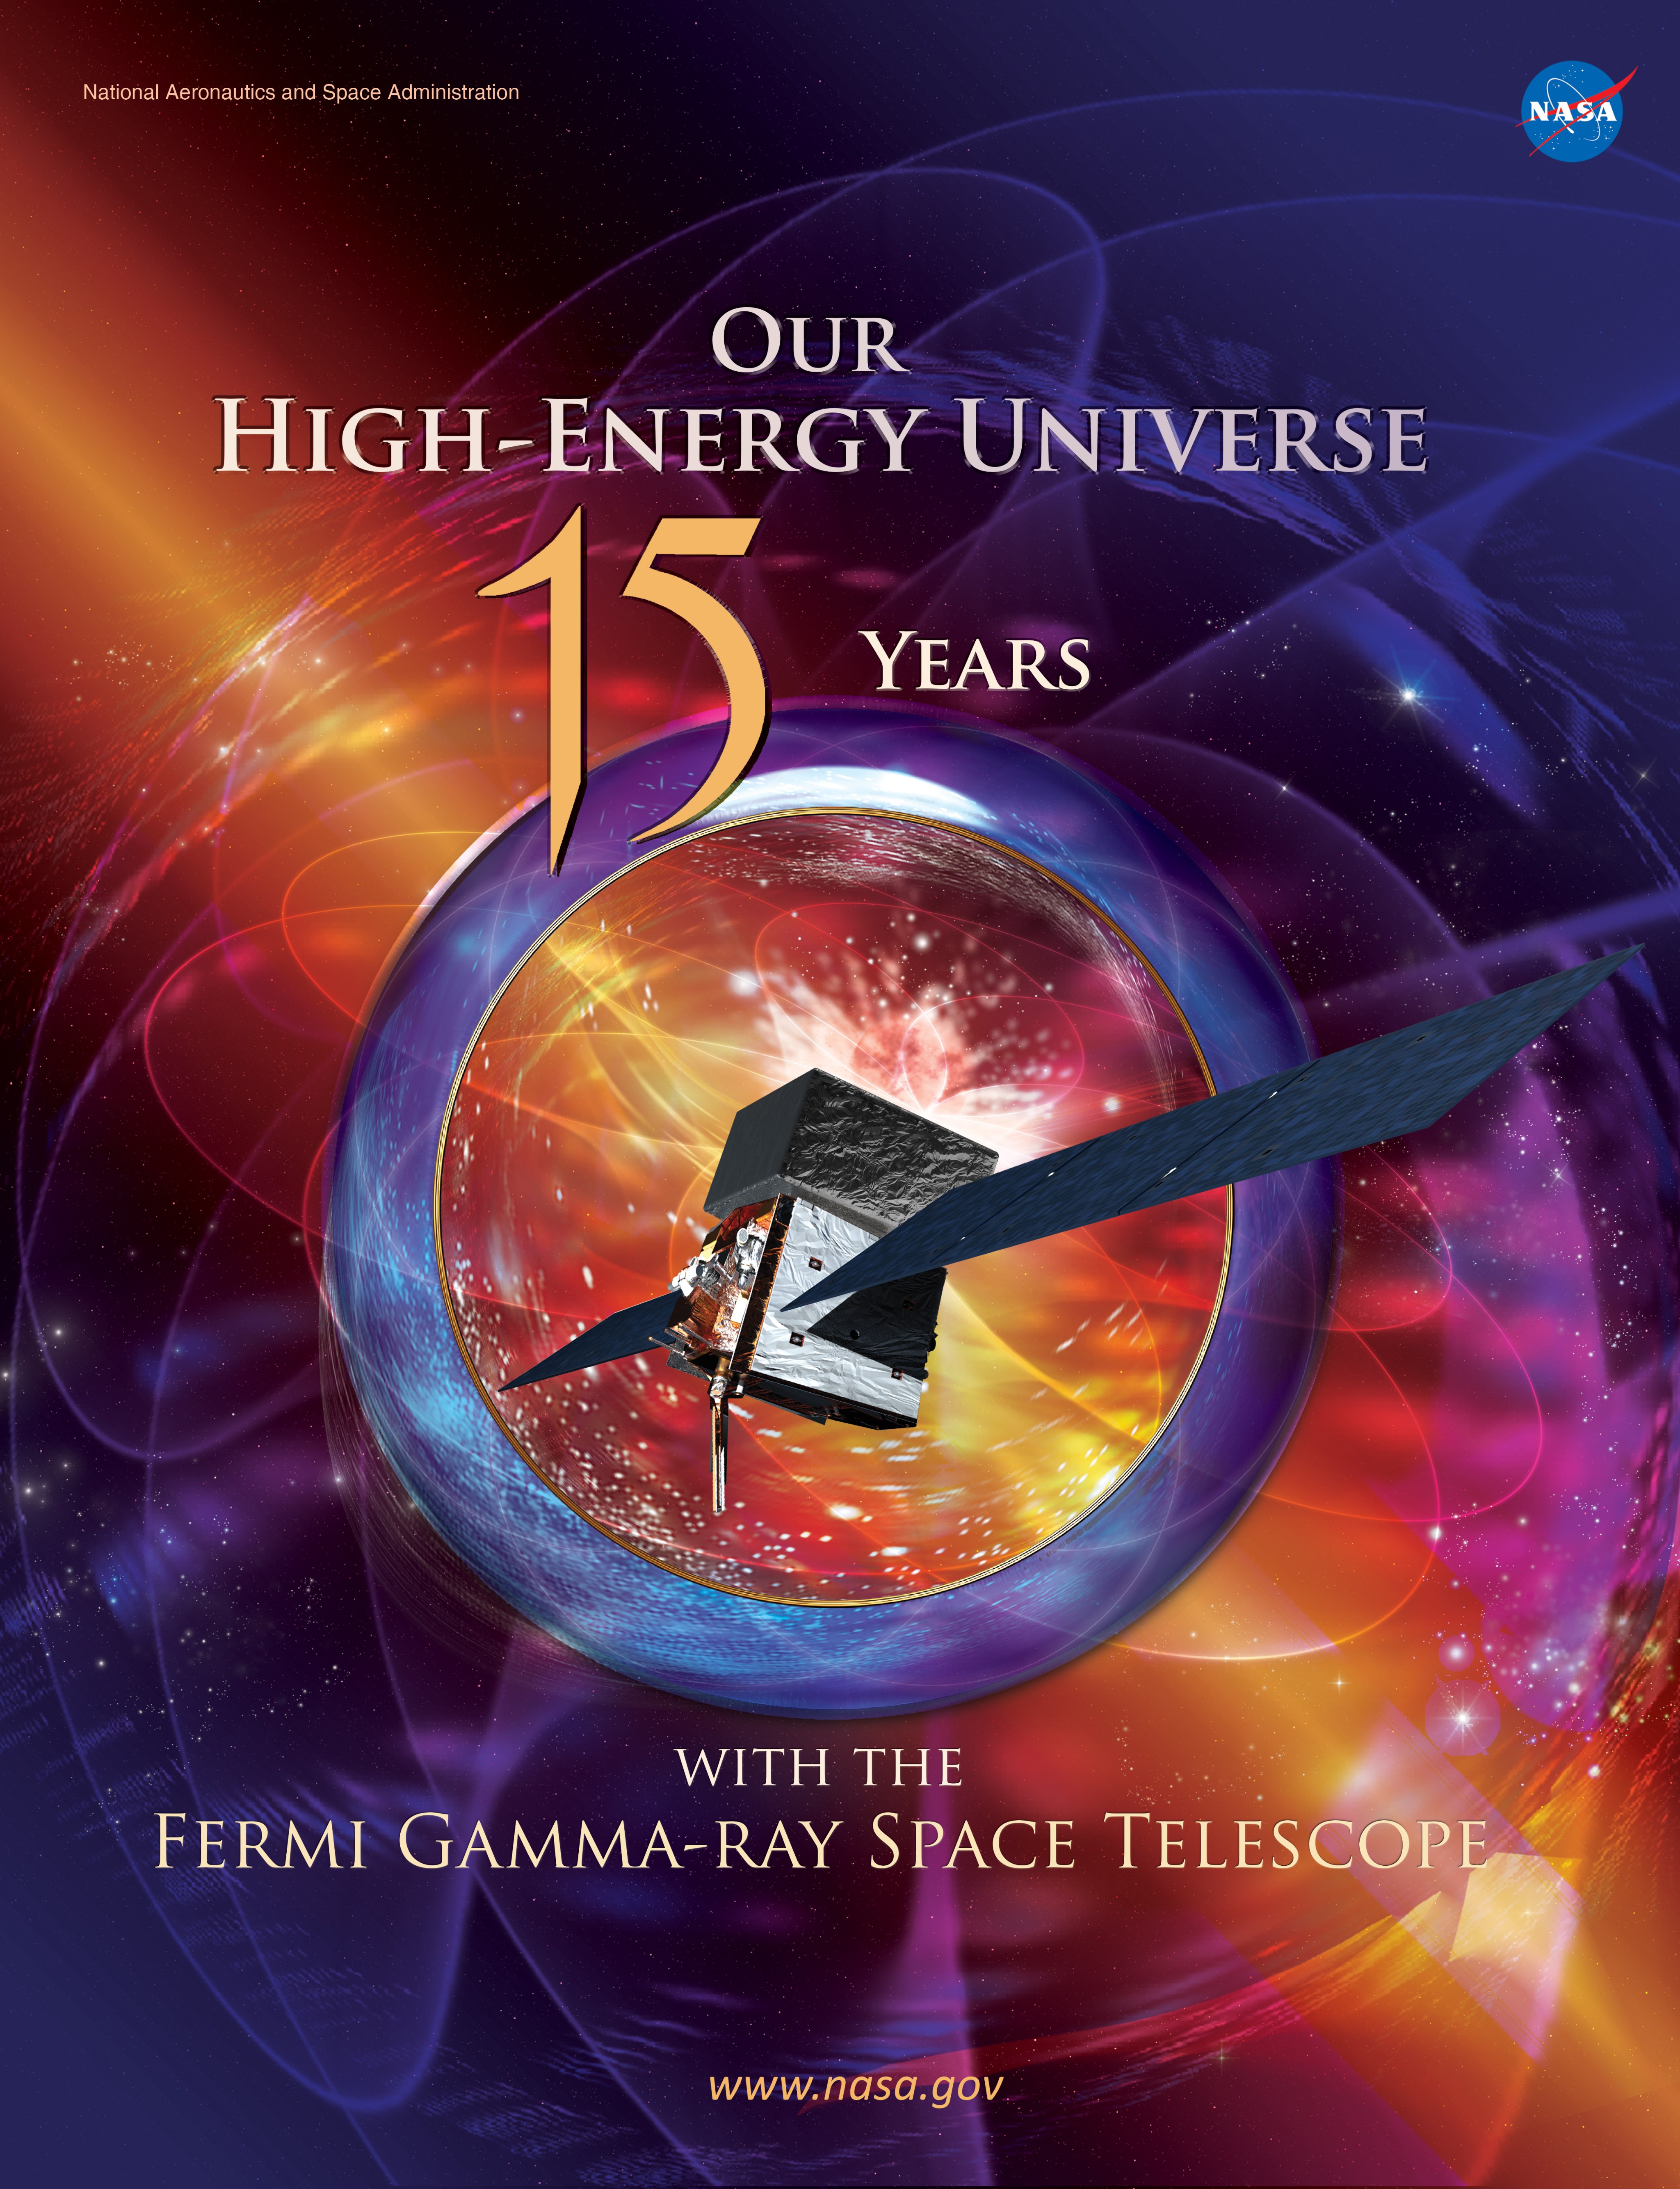 Image of the Fermi e-book cover